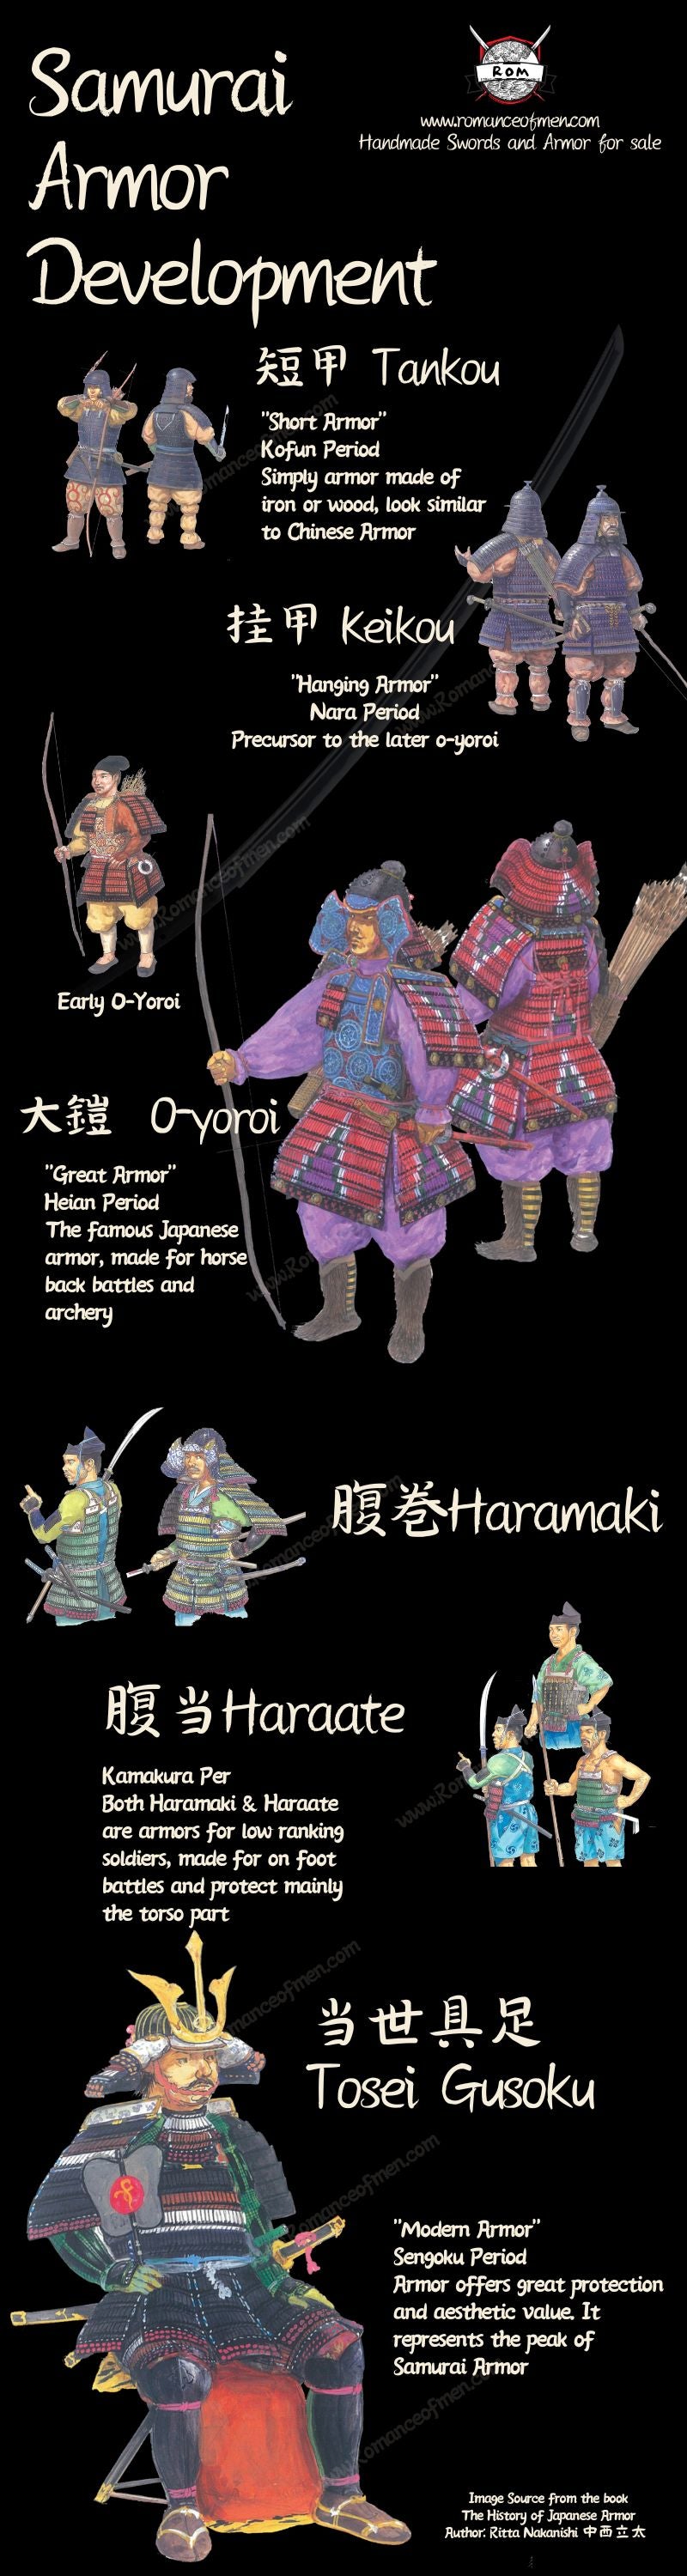 Samurai armor timeline